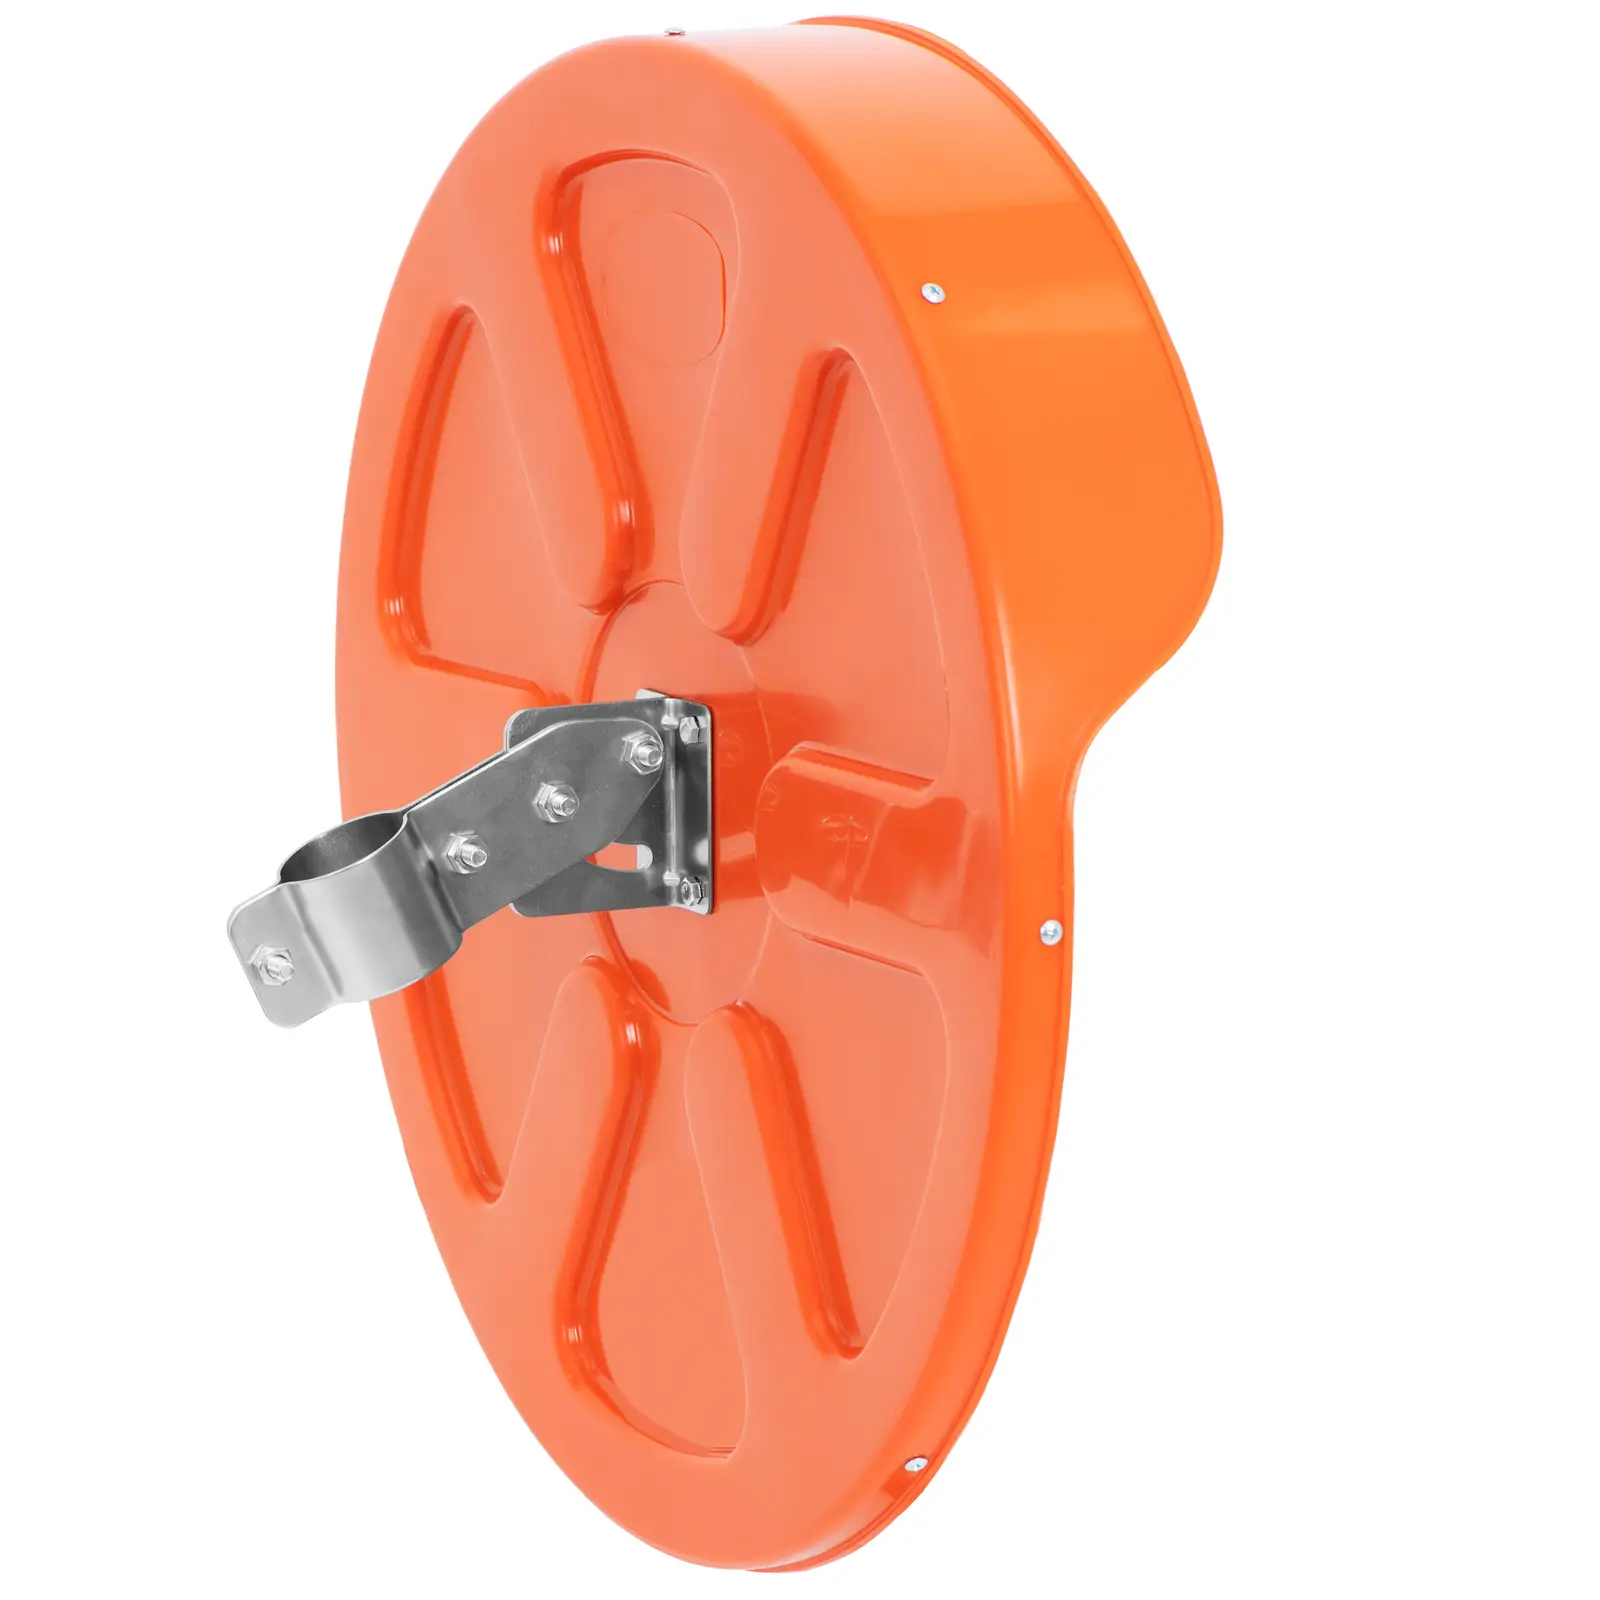 Miroir routier - Ø 60 cm - 130° - rond - orange